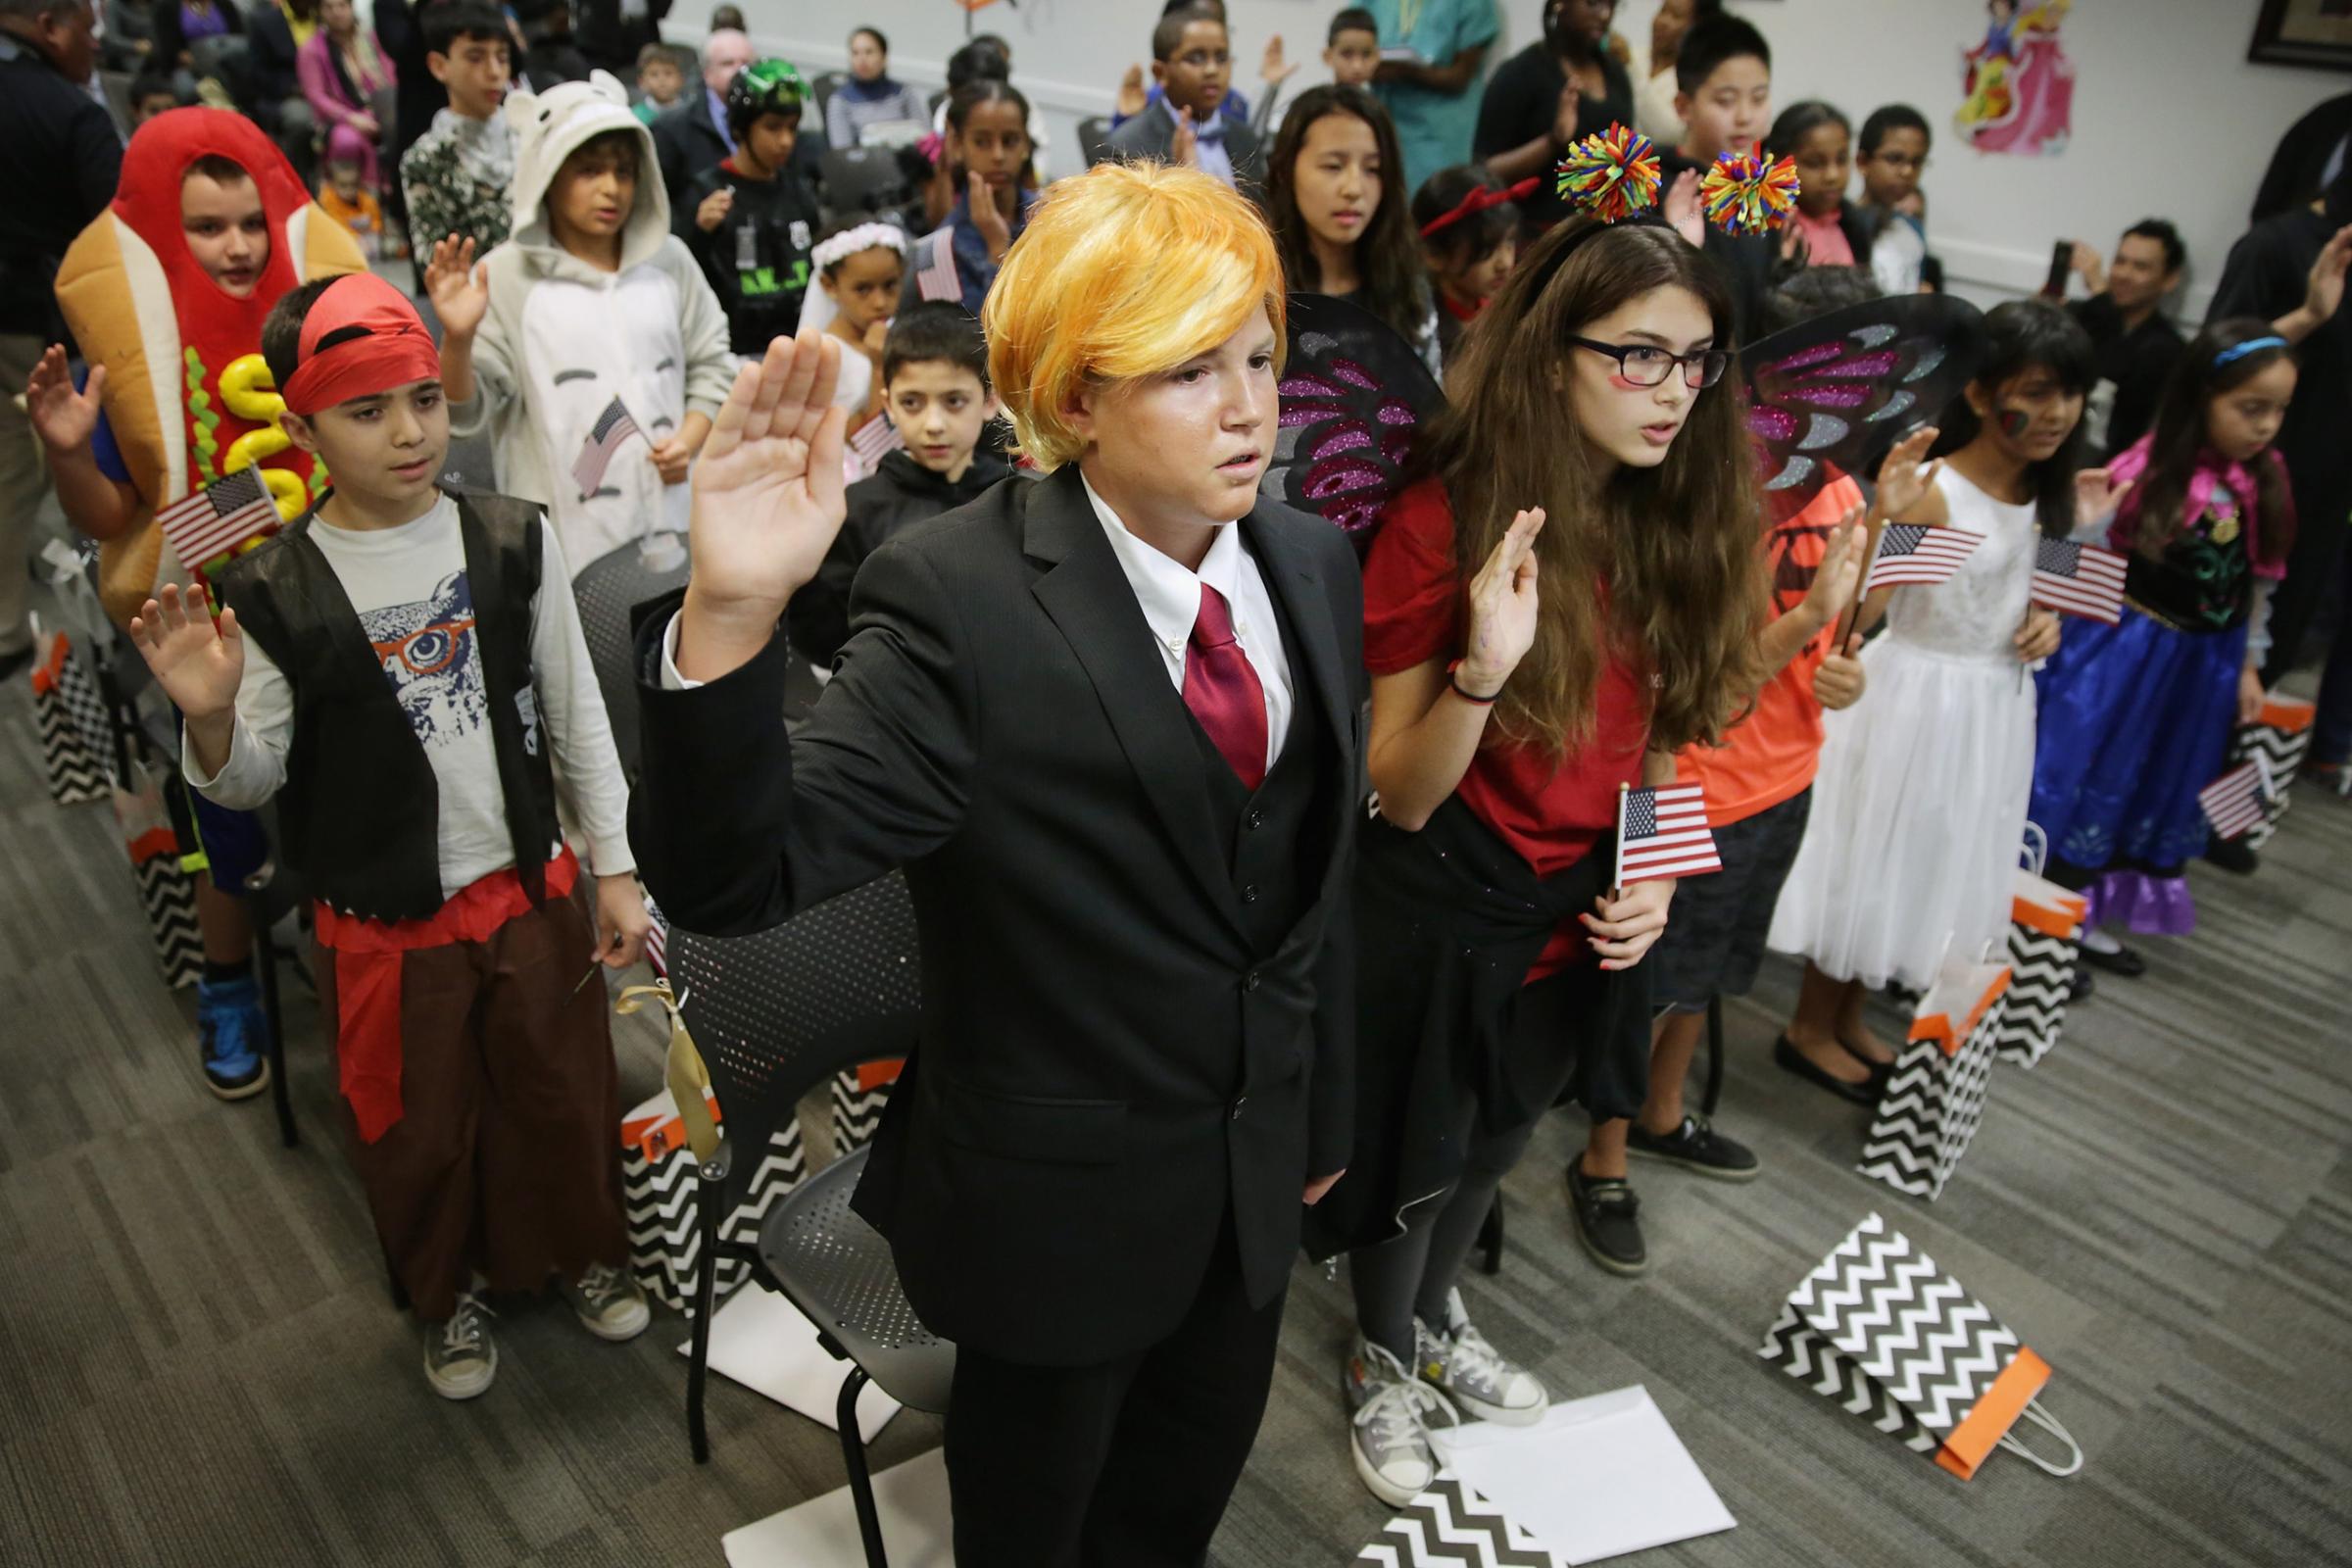 Halloween-Themed Children's Naturalization Ceremony Held In Virginia